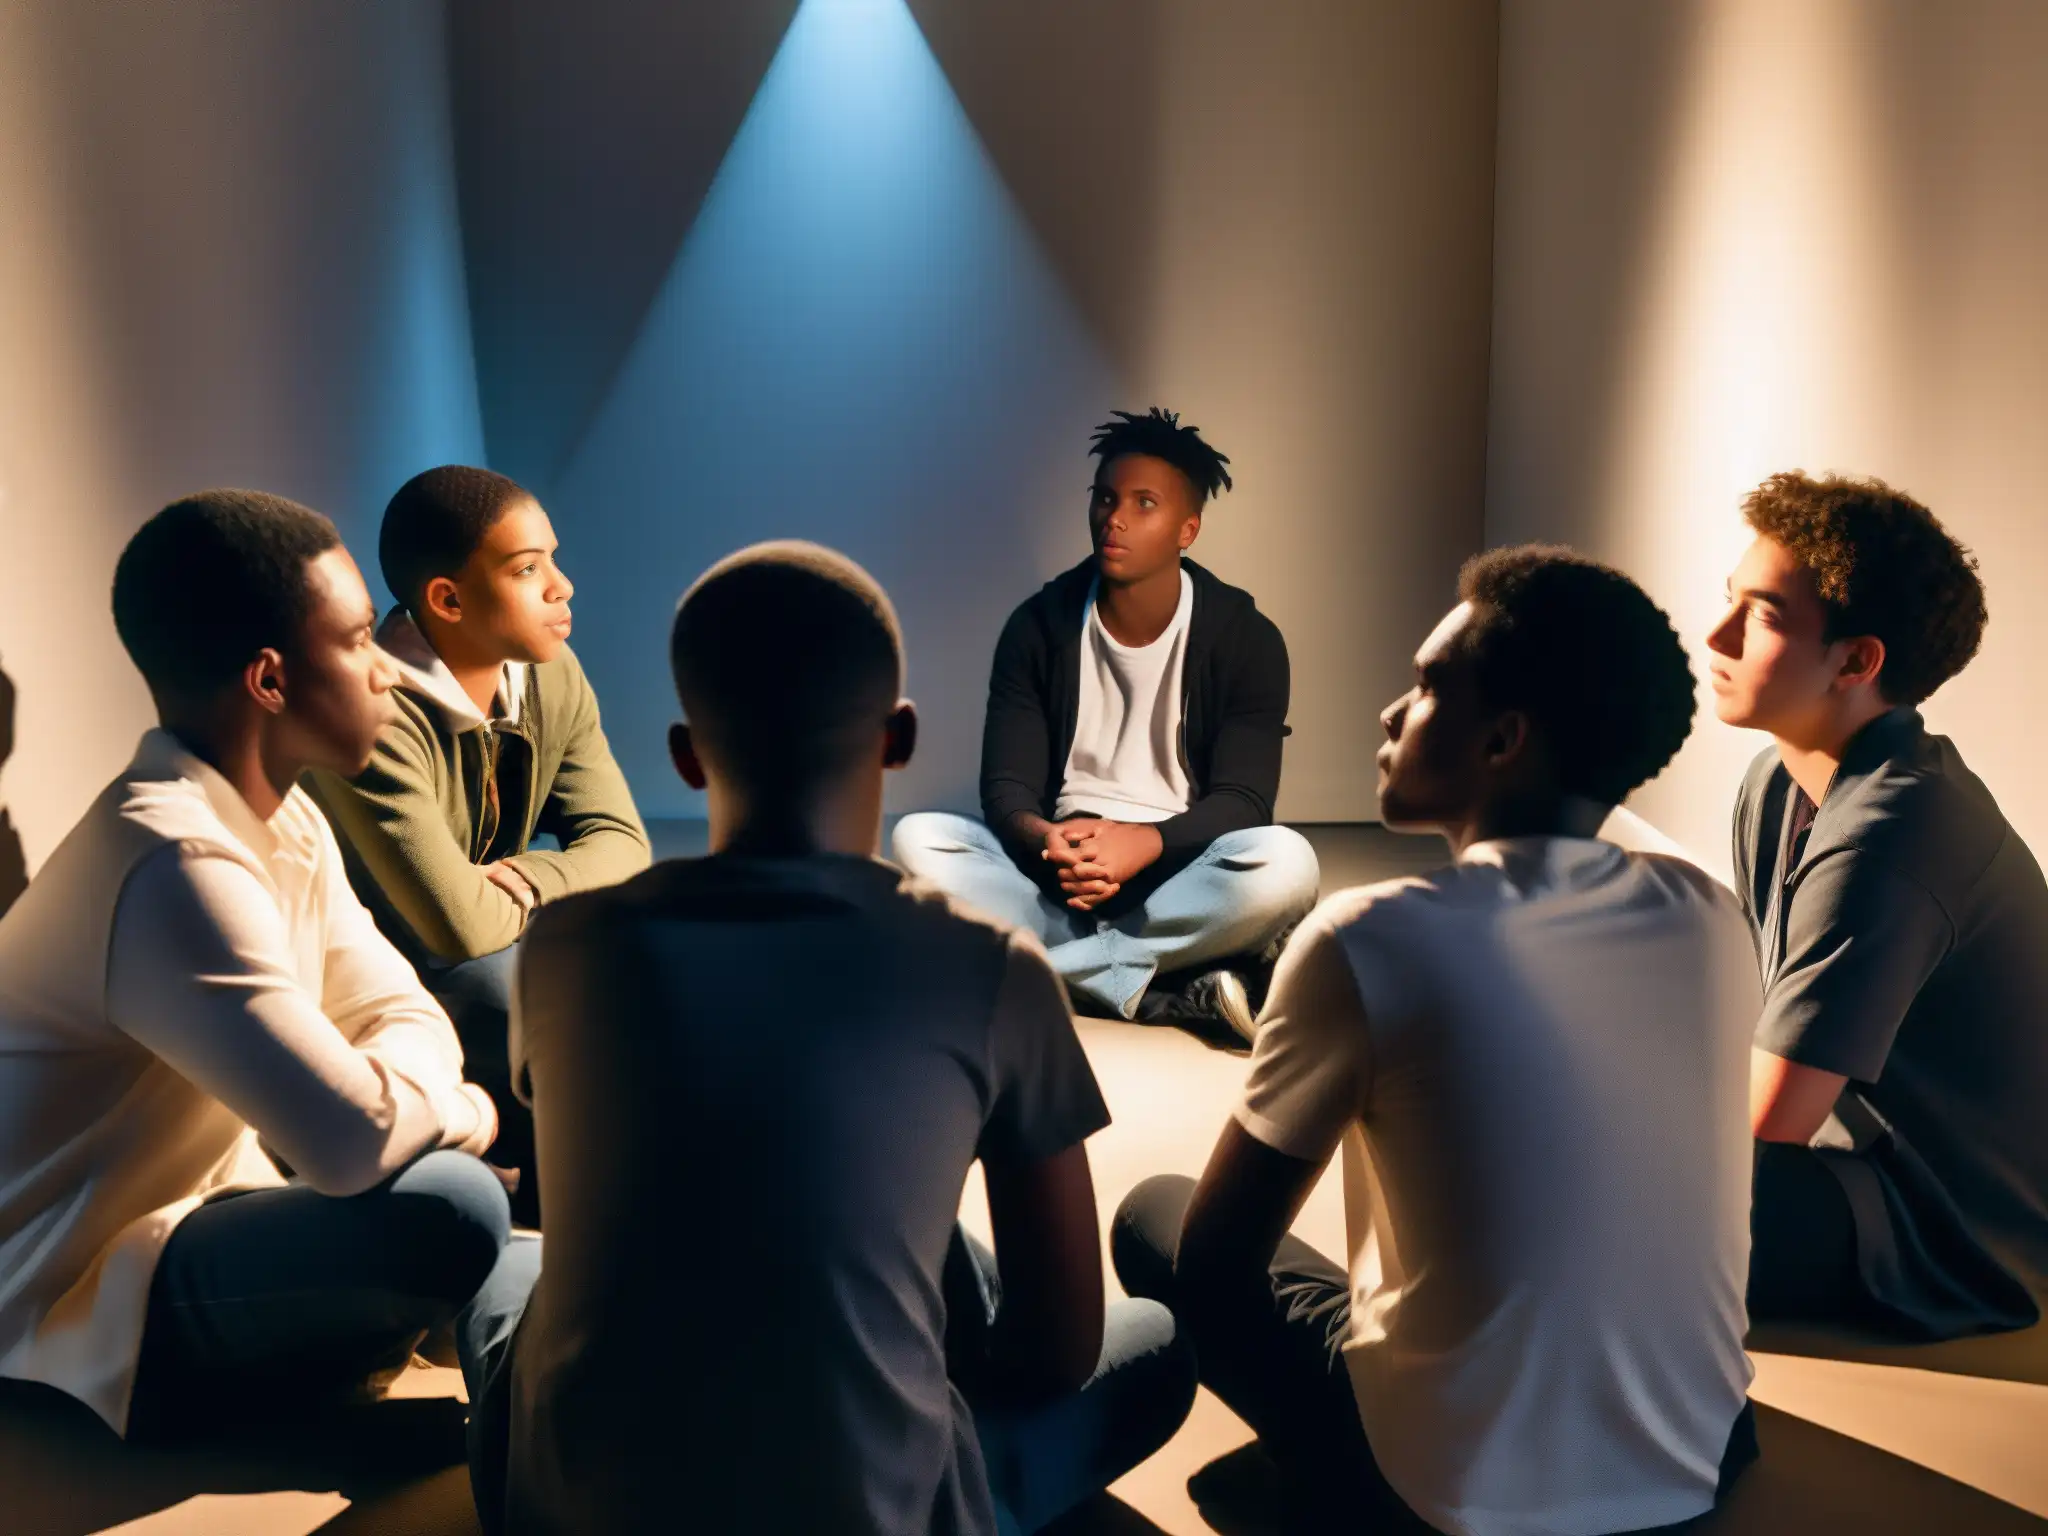 Un grupo de jóvenes discute leyendas urbanas en una sala misteriosa